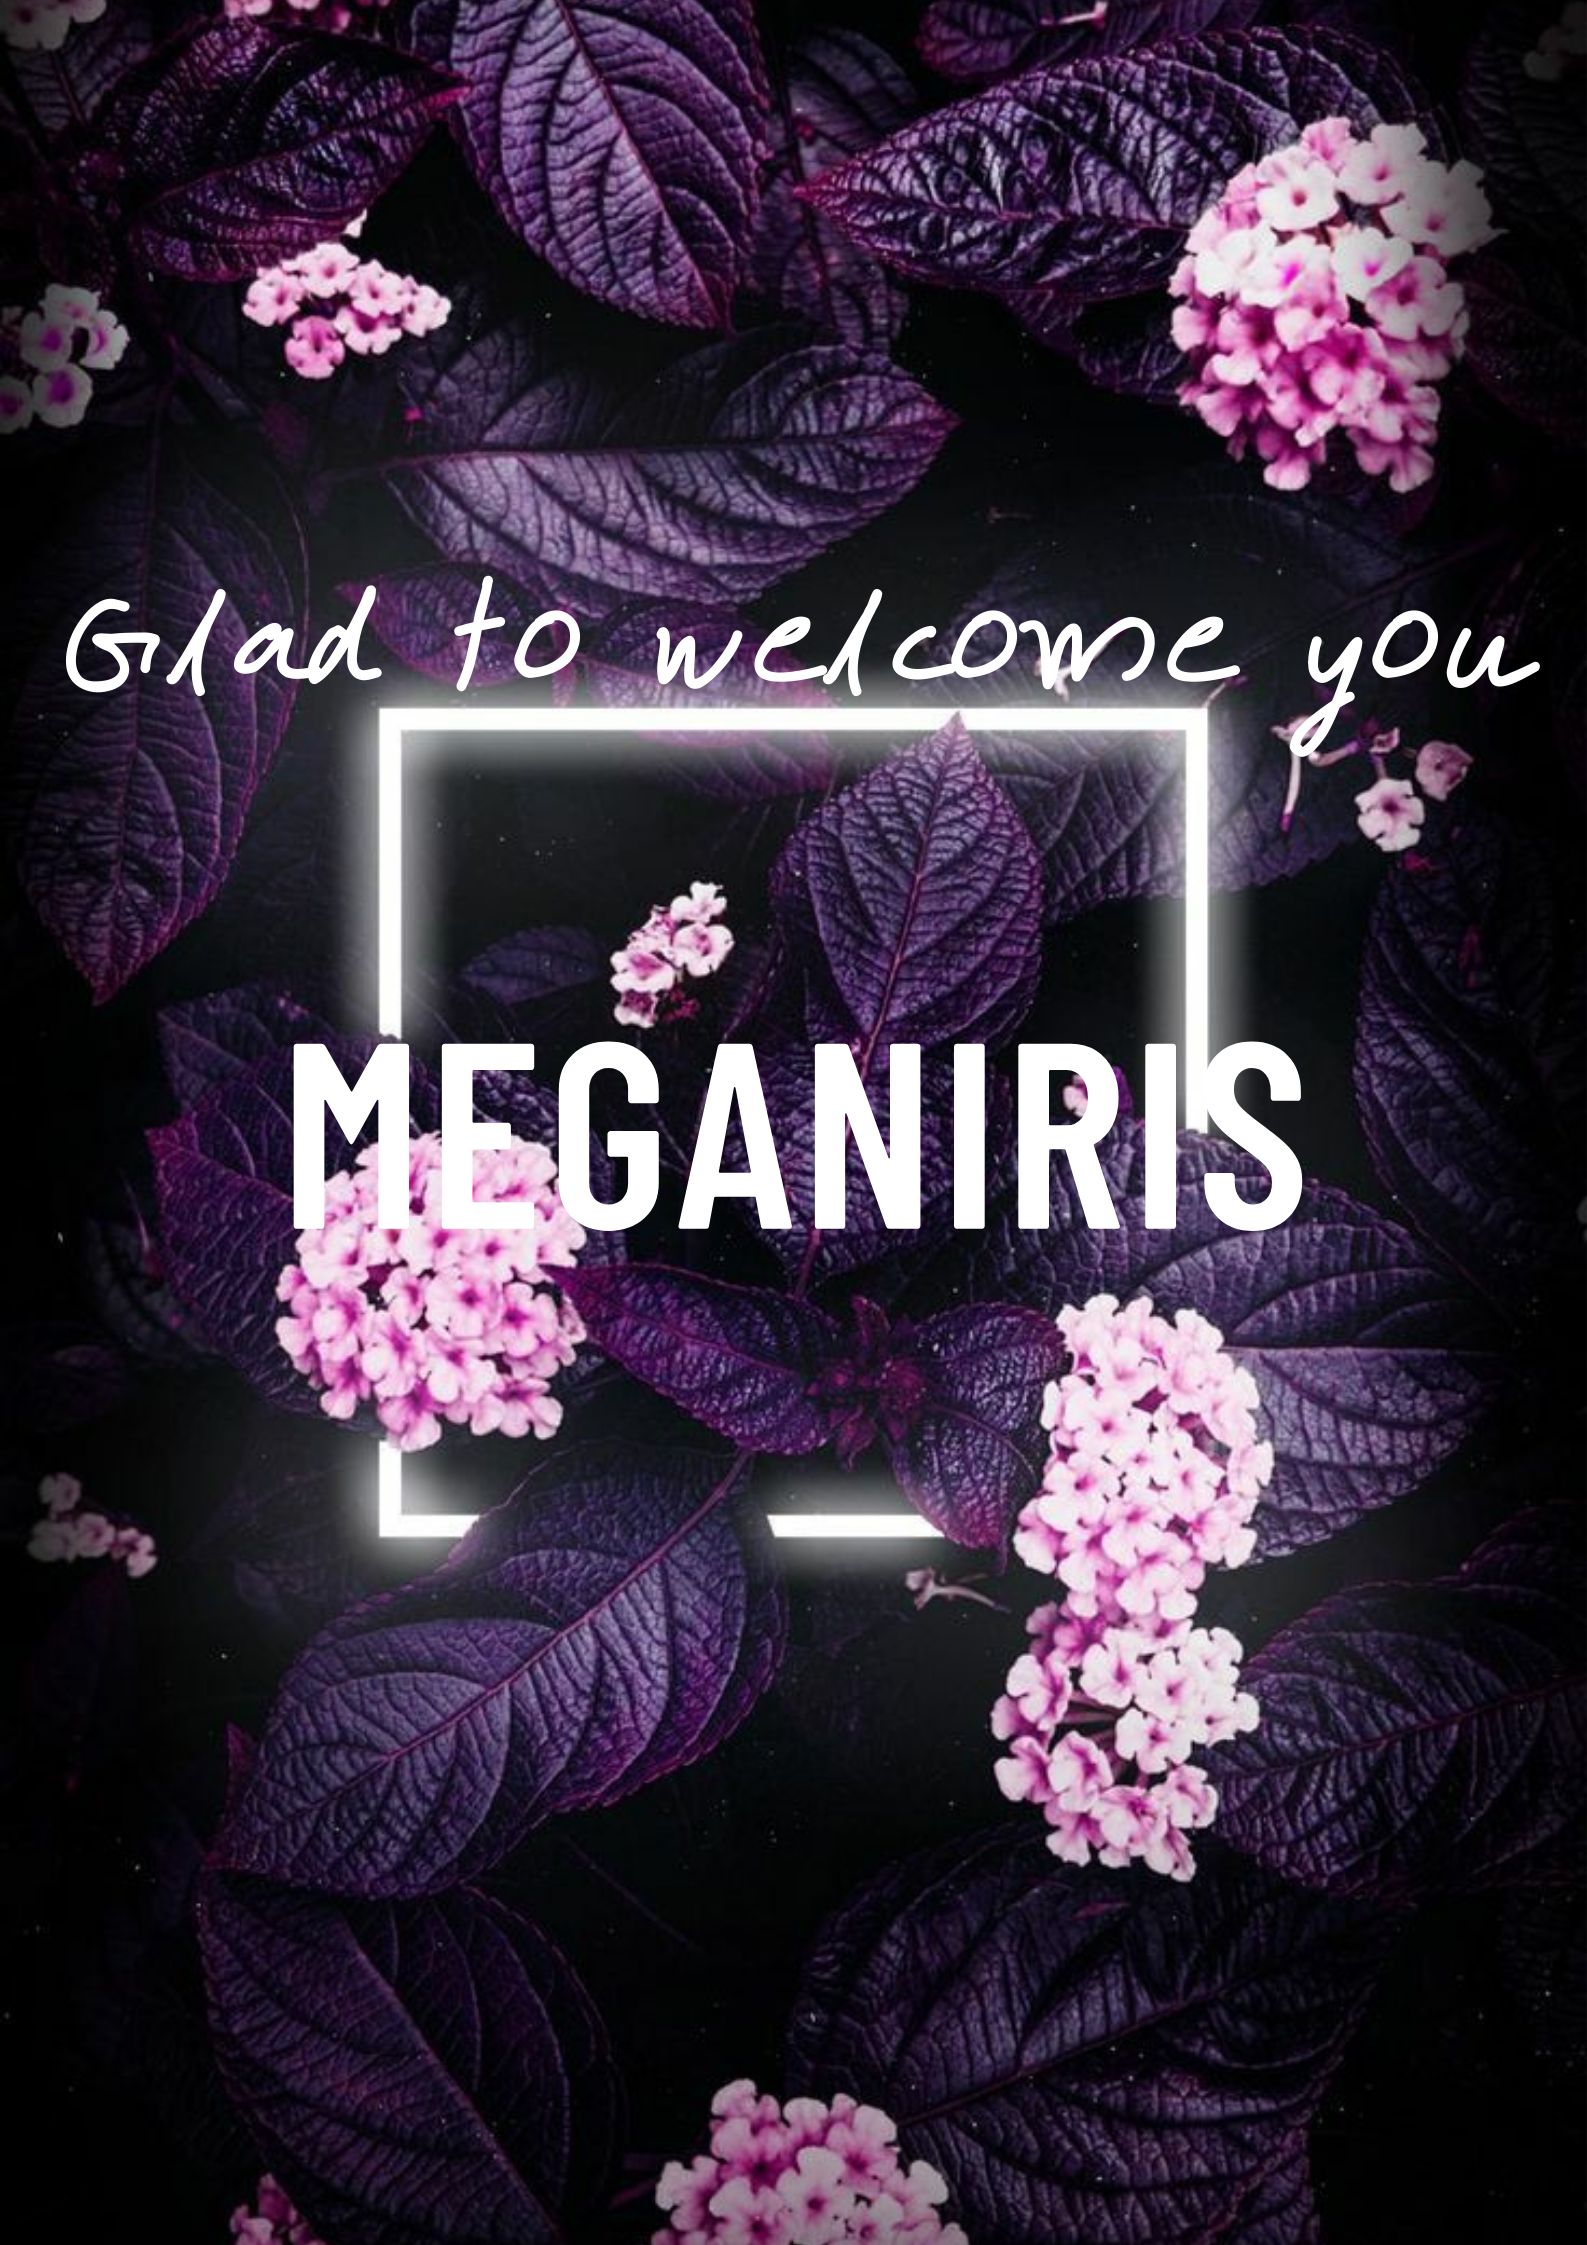 MeganIris 1 image: 1